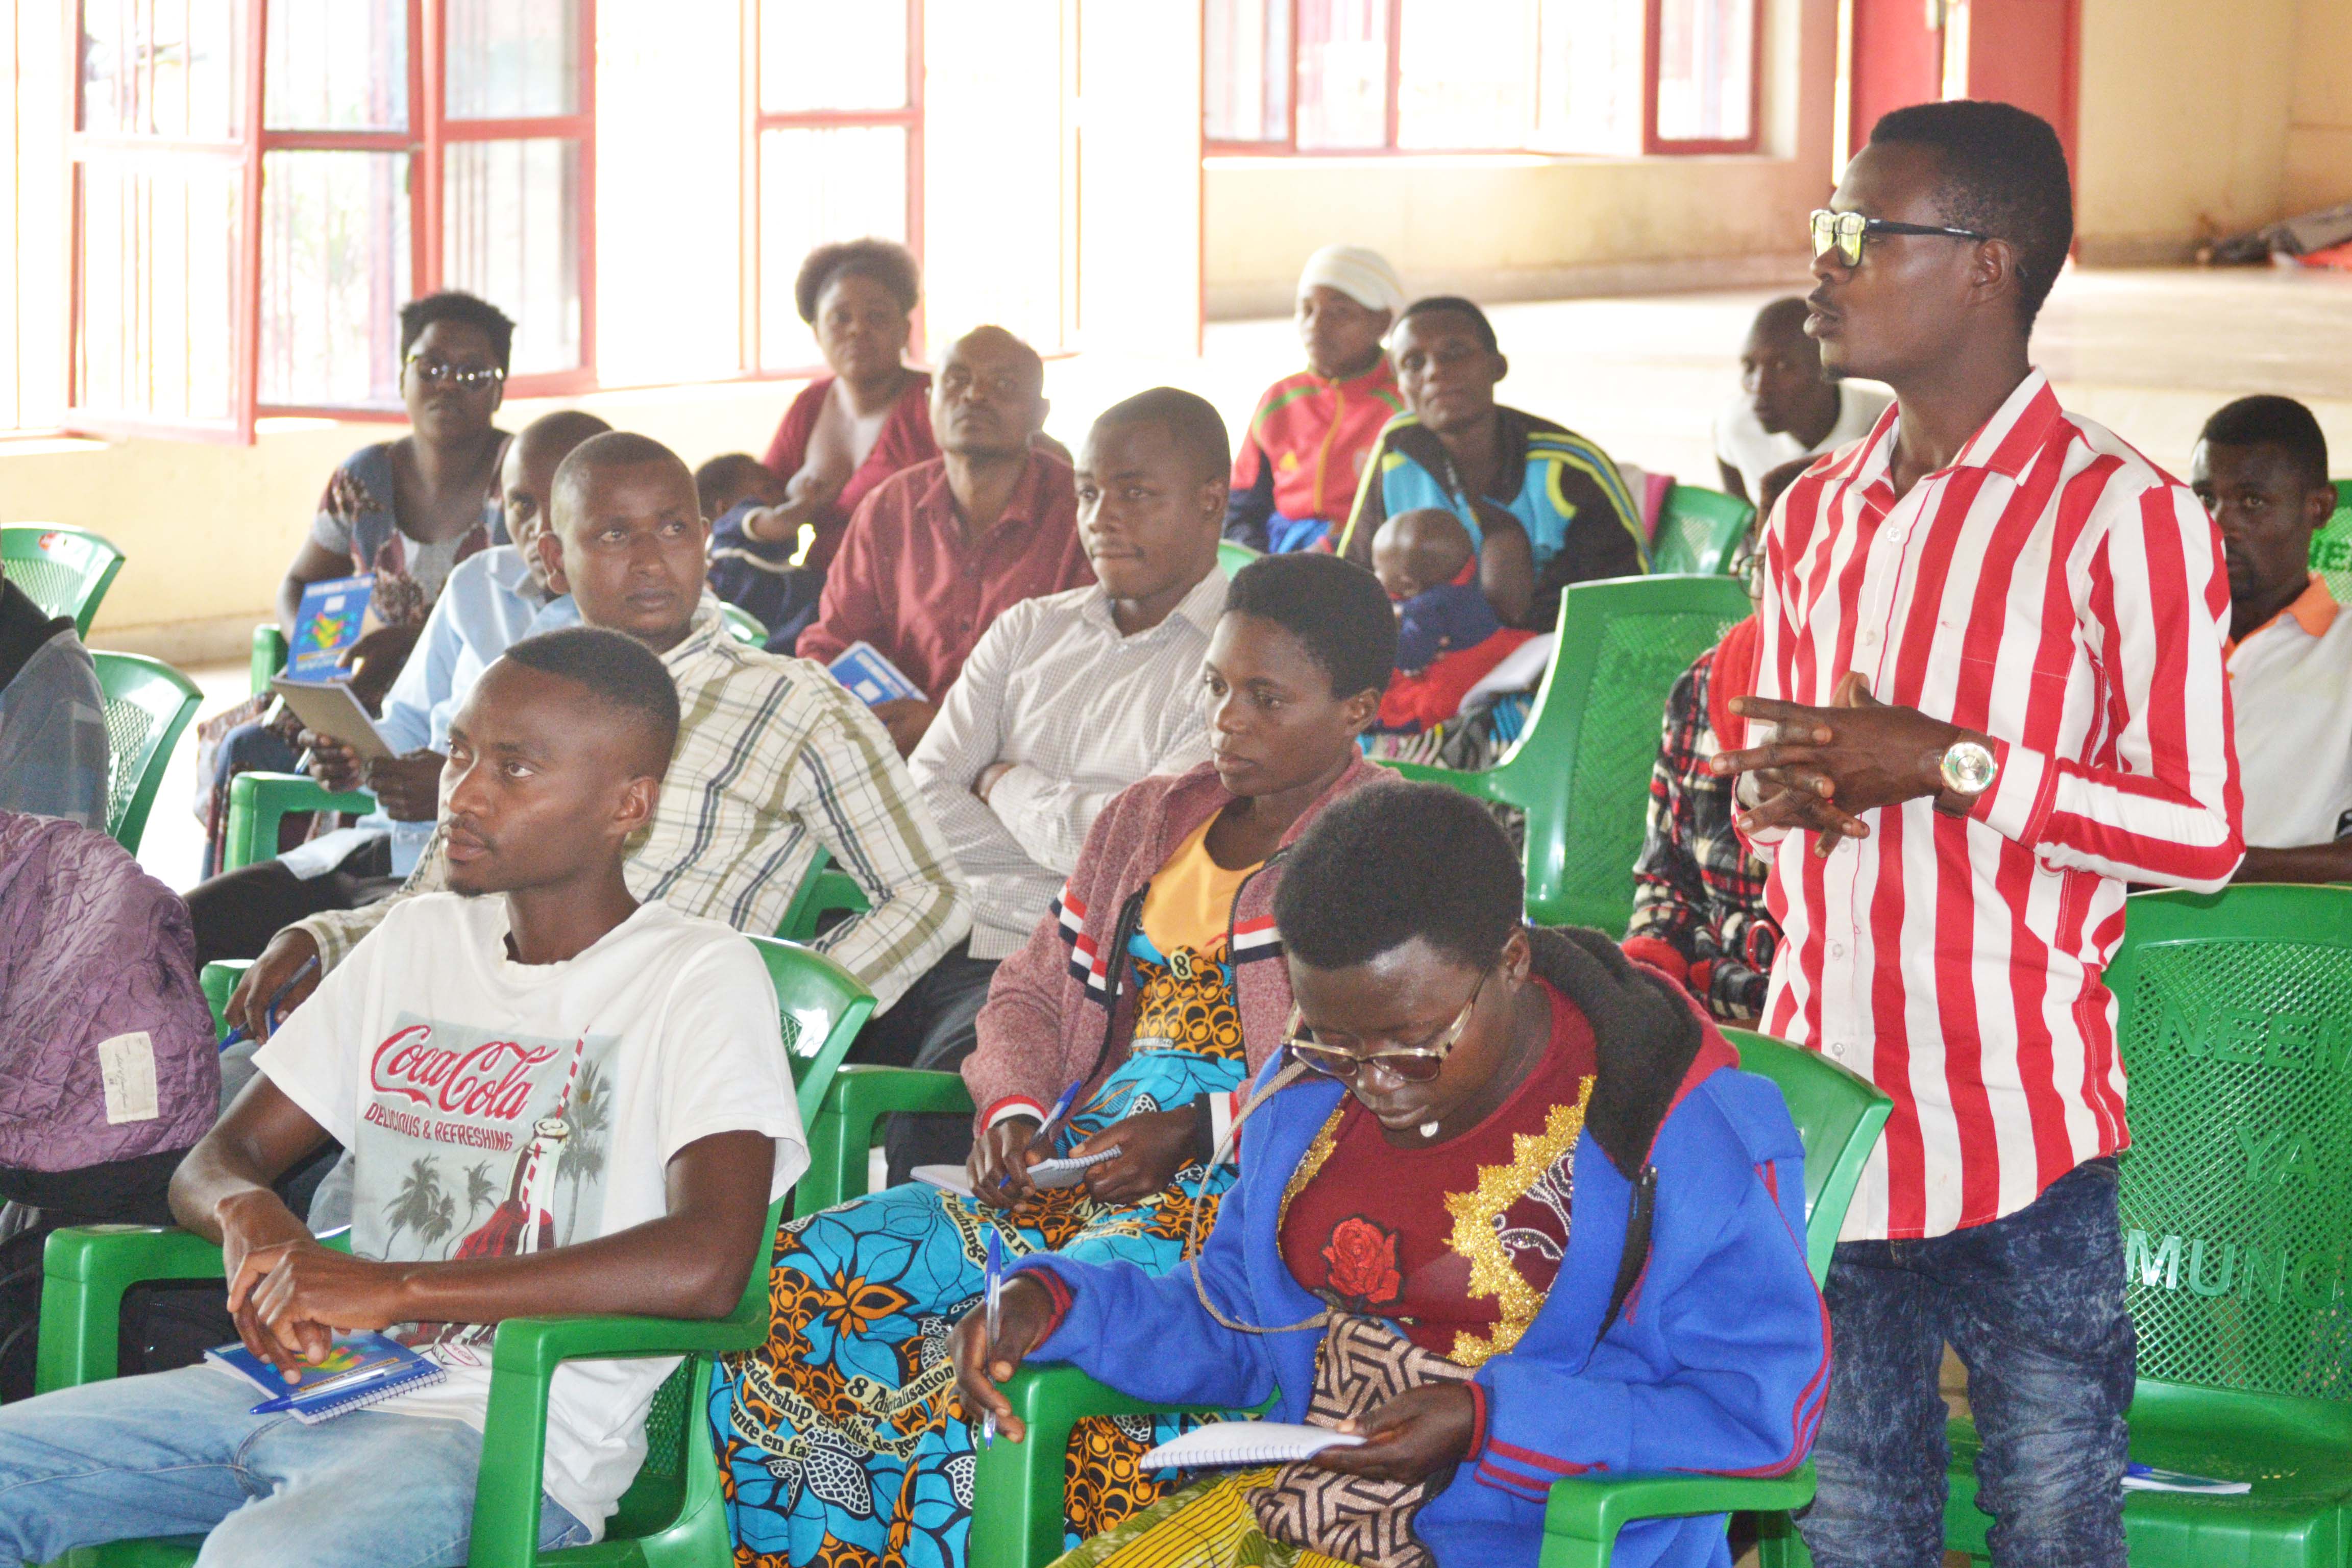 Formation des jeunes affiliés aux partis politiques, bénéficiaires du projet Twuzuzanye dans les provinces de Makamba. 